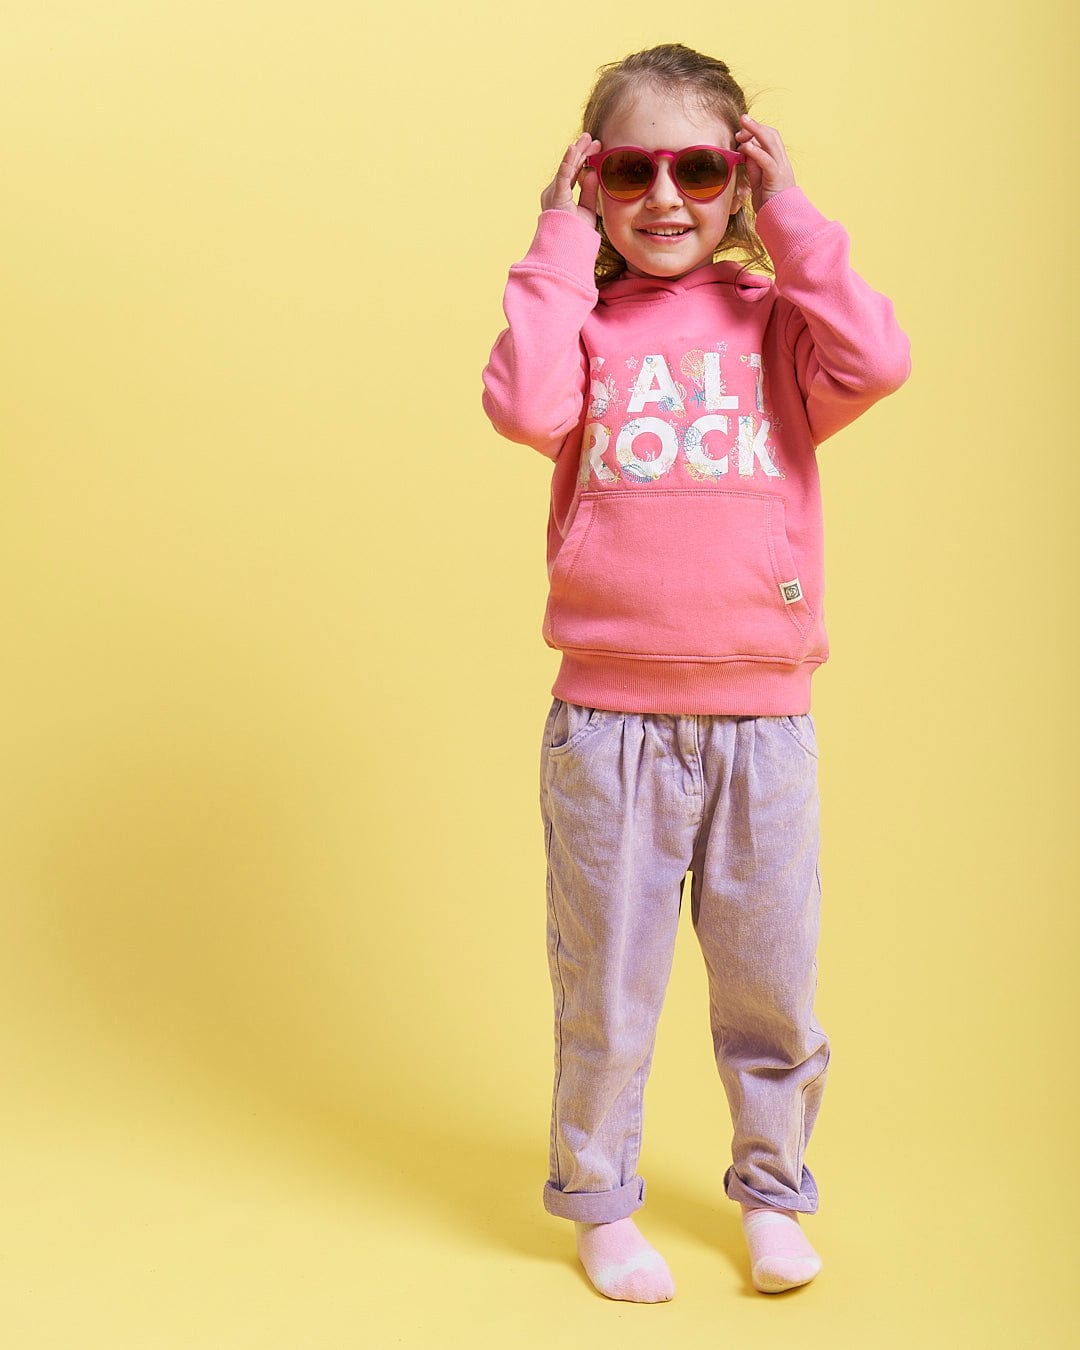 A little girl wearing Seabed - Kids Pop Hoodie - Pink by Saltrock.